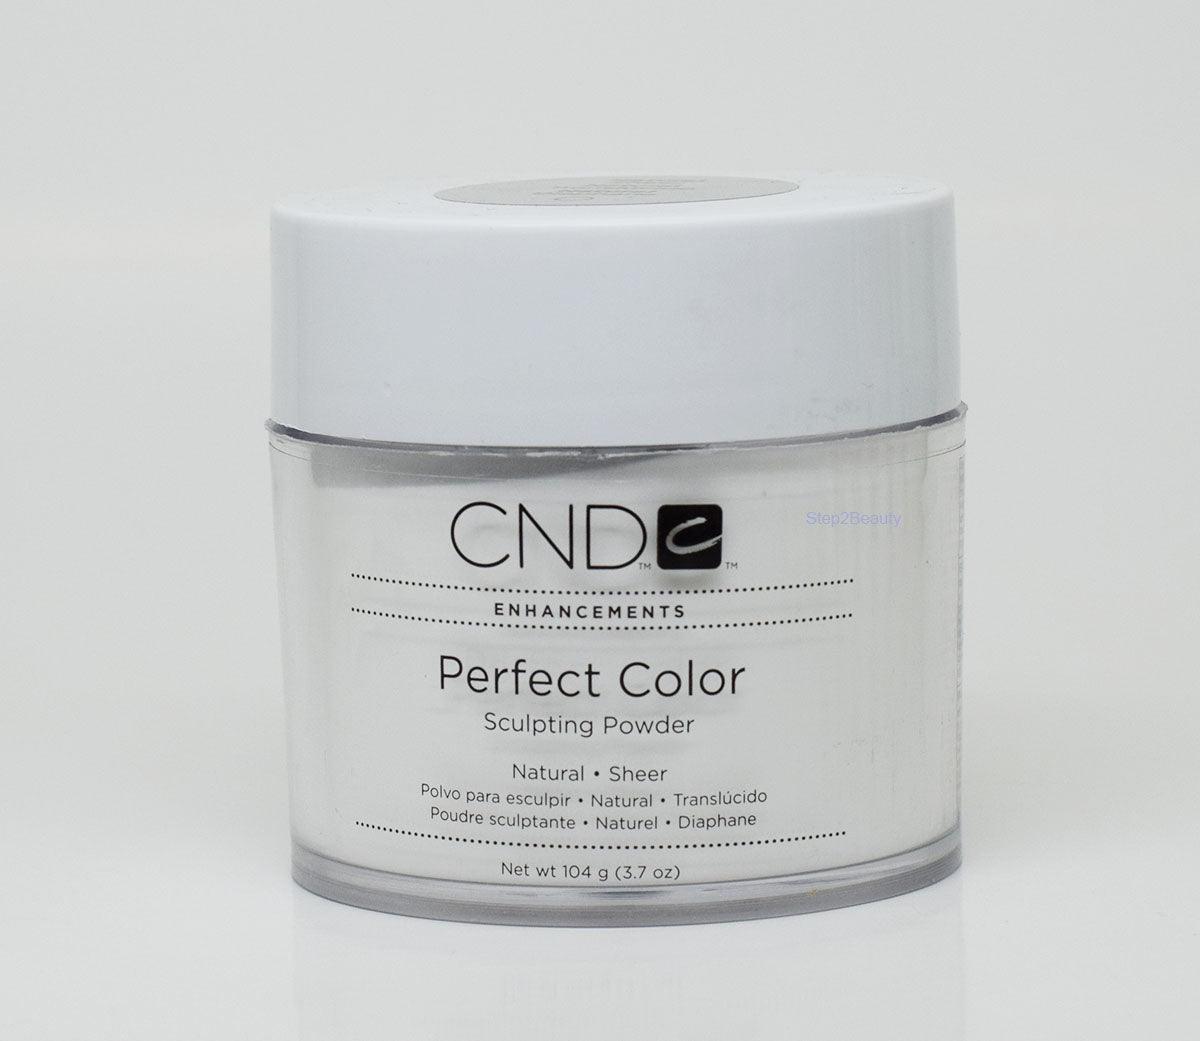 CND Enhancement Sculpting Powder - Perfect Color - Natural Sheer 3.7 oz